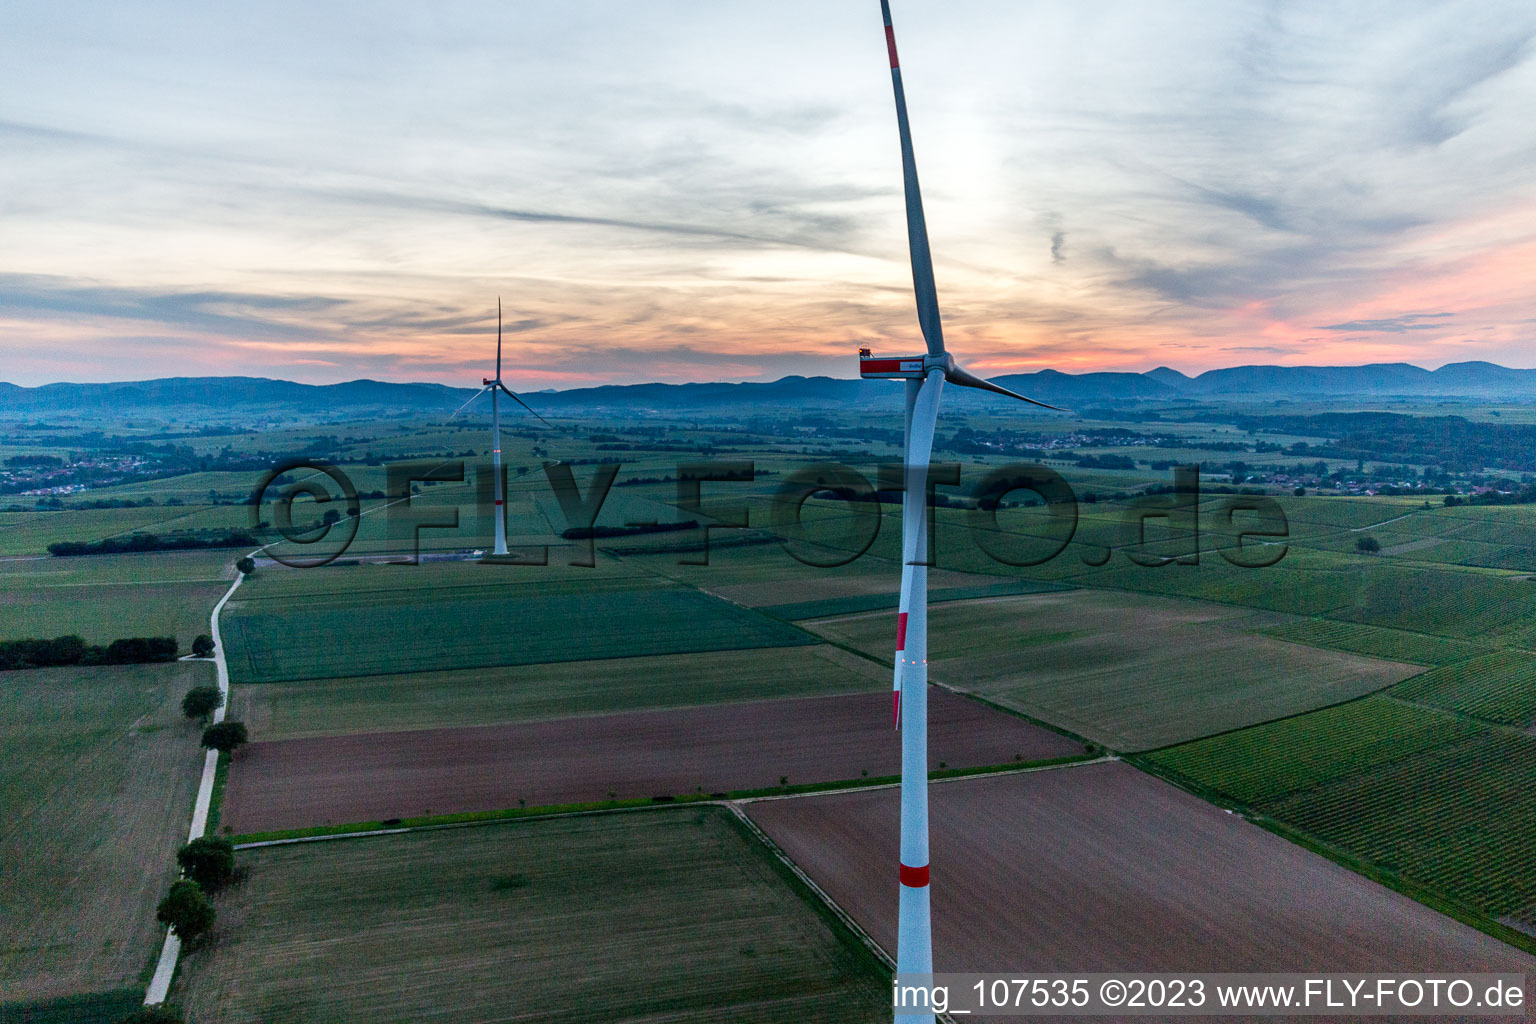 Vue aérienne de Parc éolien EnBW - éolienne avec 6 éoliennes à Freckenfeld dans le département Rhénanie-Palatinat, Allemagne